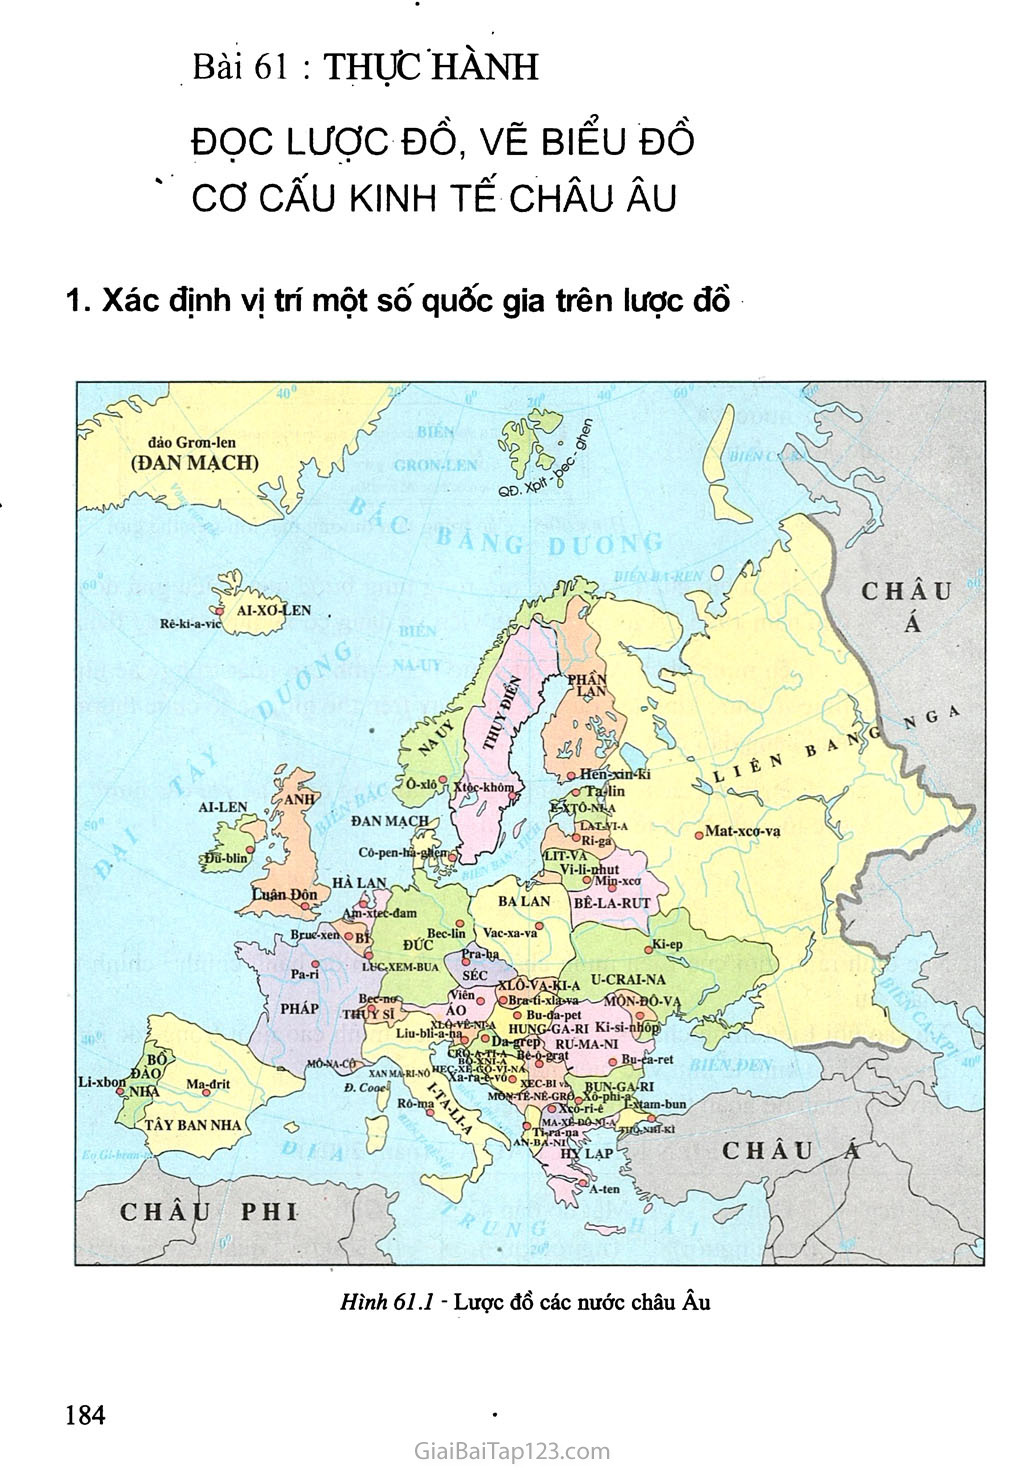 Bài 61: Thực hành: Đọc lược đồ, vẽ biểu đồ cơ cấu kinh tế châu Âu trang 1